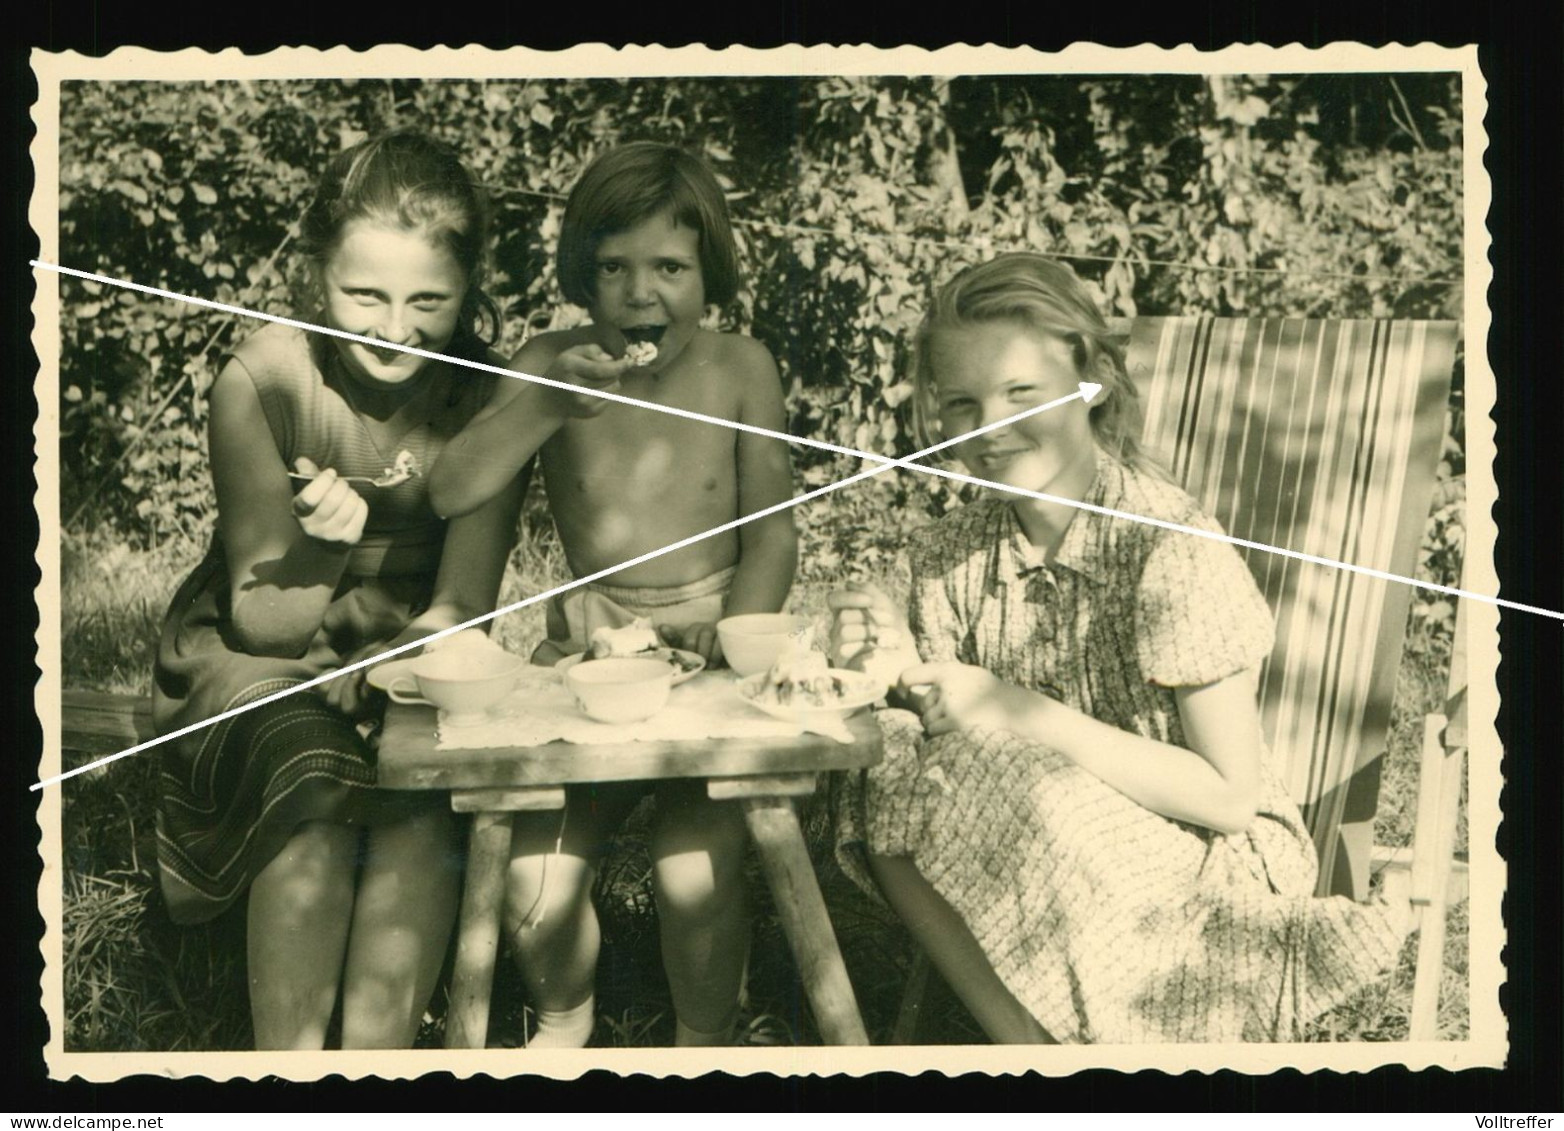 Orig. Foto 30er Jahre Hübsche Mädchen Zusammen, Picknick, Sweet Young Girls Schoolgirls Beach Fashion Garden Eating - Anonymous Persons